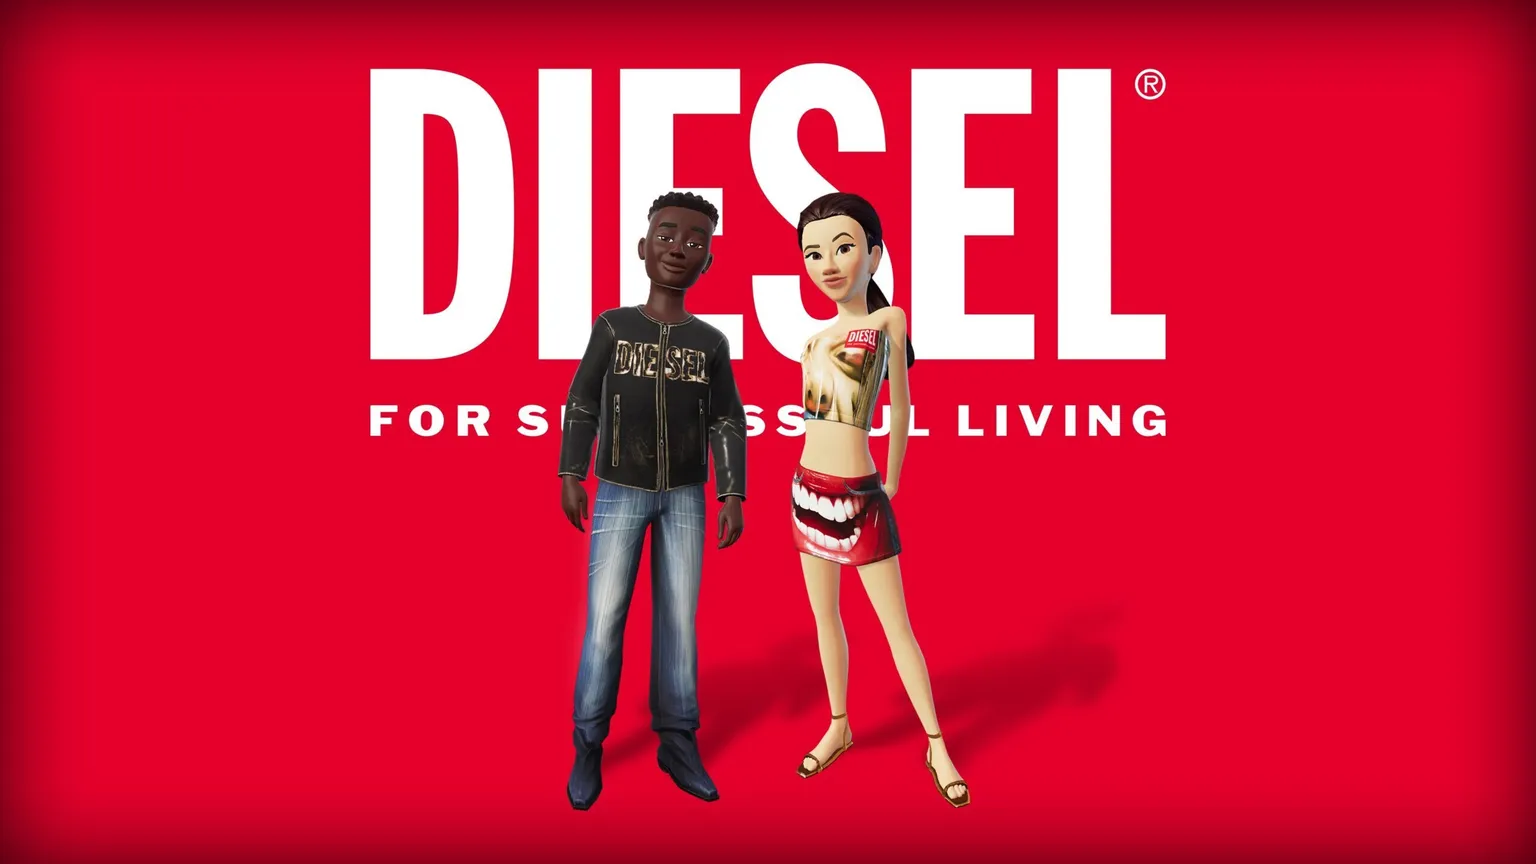 Image: Diesel